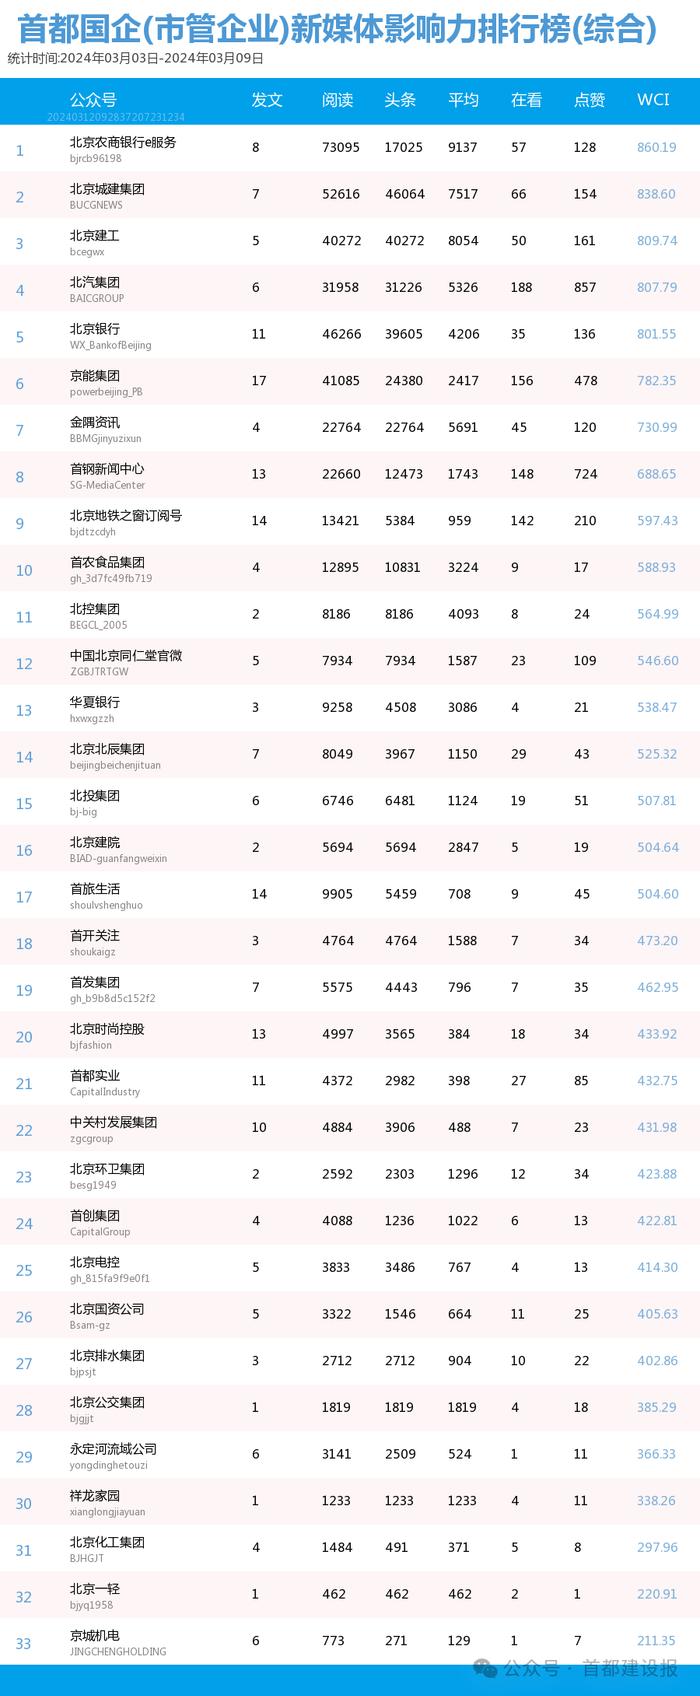 【北京国企新媒体影响力排行榜】3月周榜(3.3-3.9)第398期